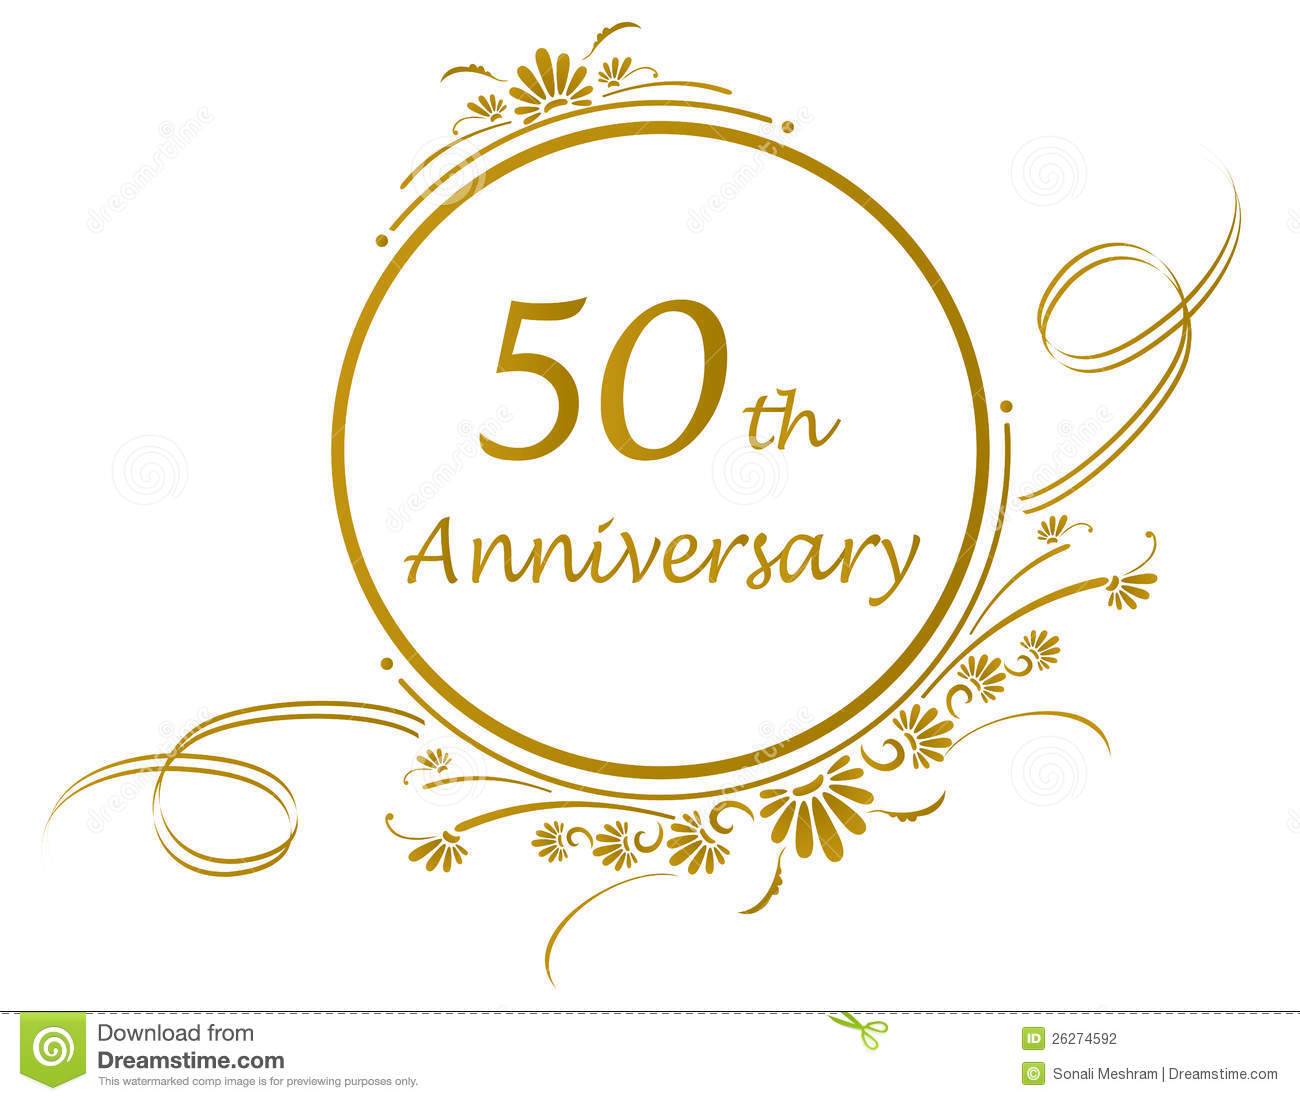 . Anniversary clipart 50 year